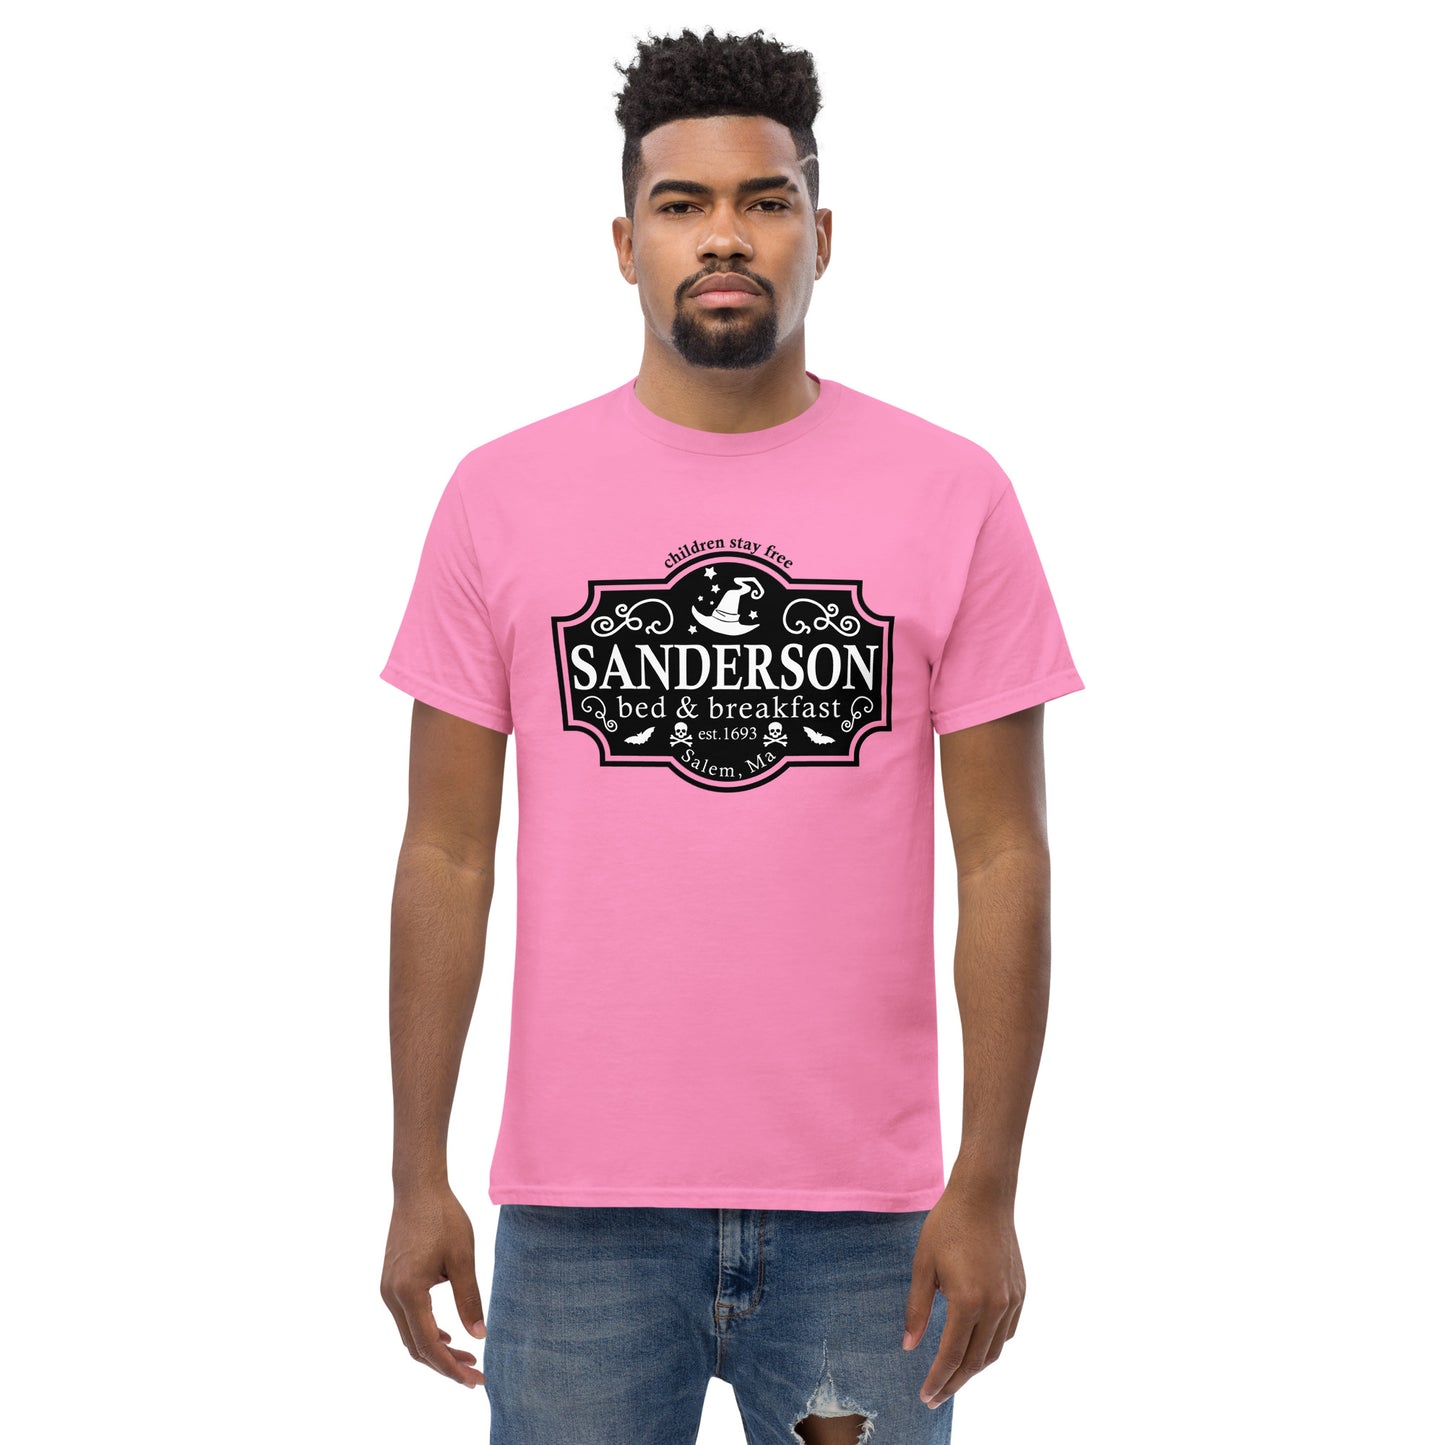 Sanderson B&B T-Shirt